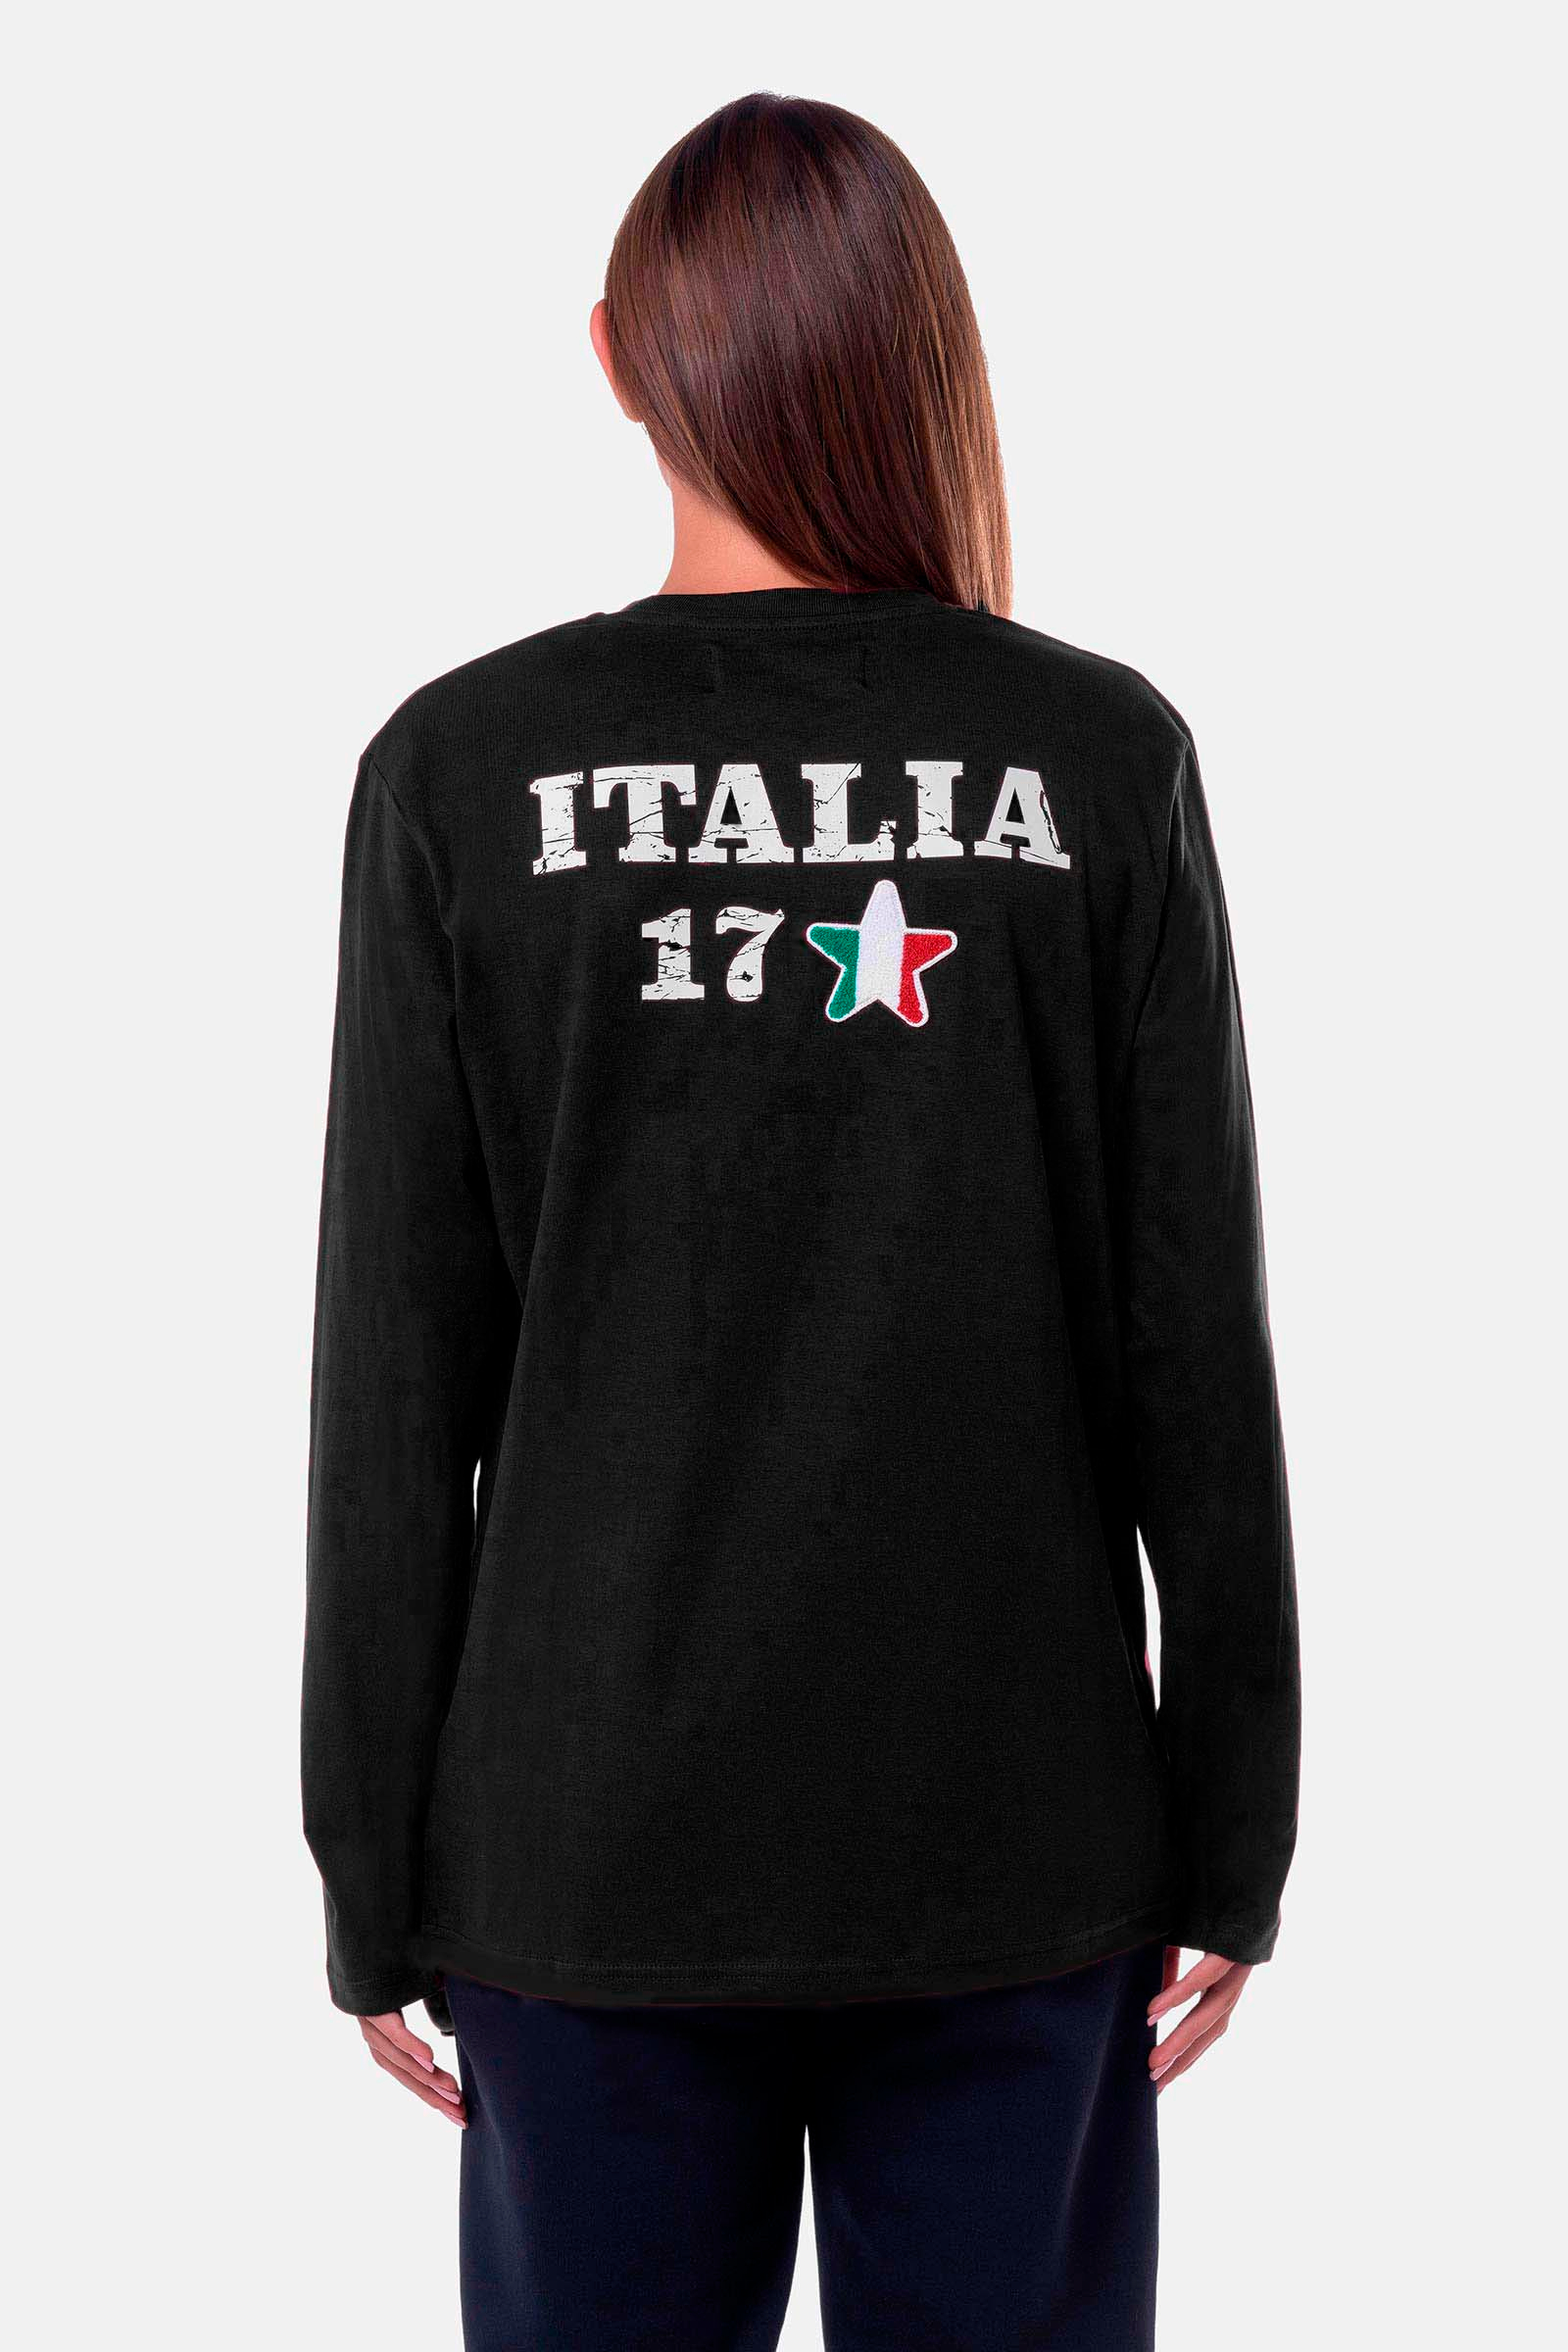 ITALIA 17 T-SHIRT - BLACK - Hydrogen - Luxury Sportwear